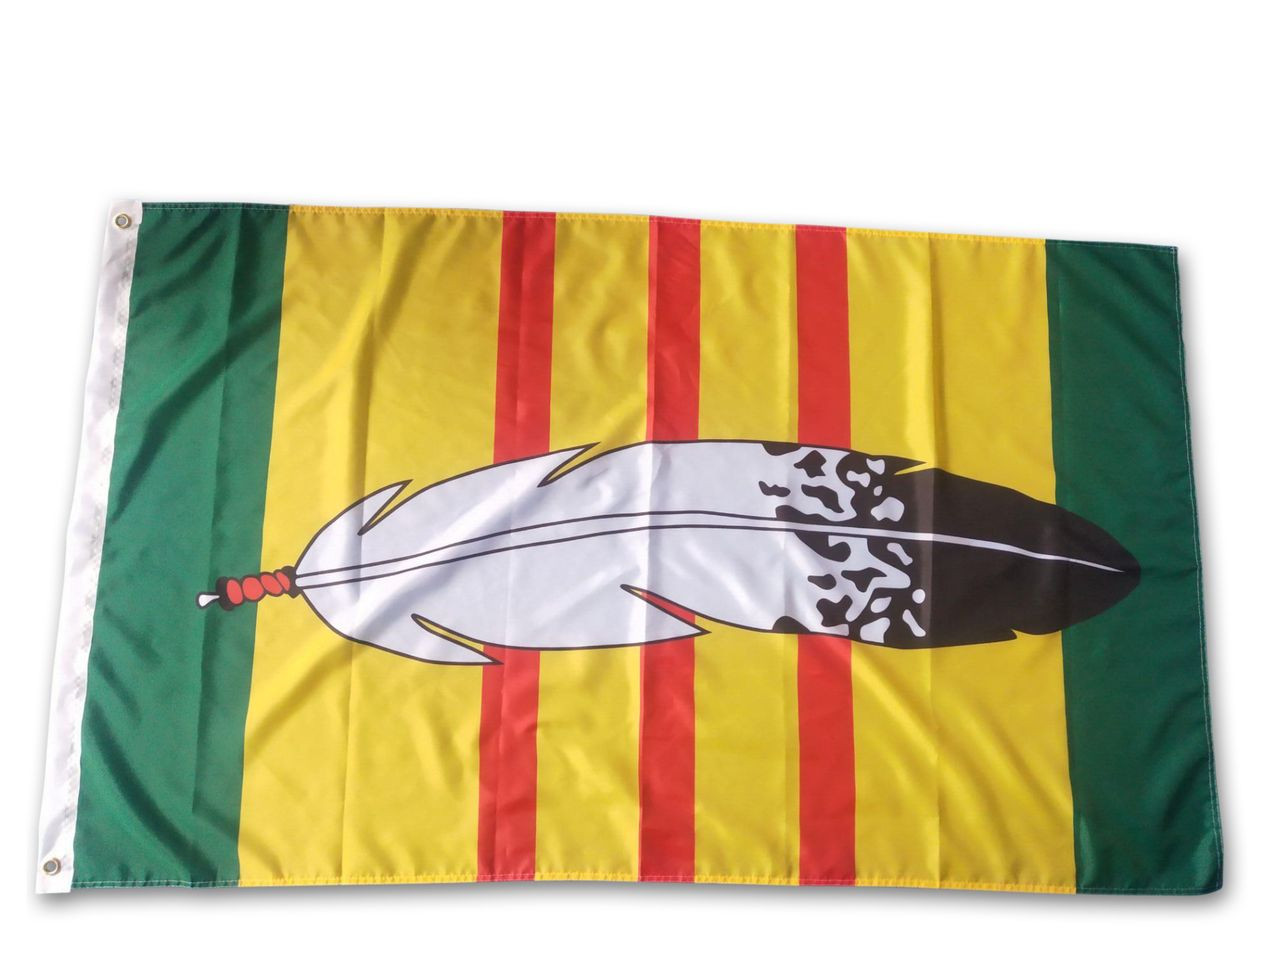 Vietnam Veterans Eagle Feather Flag 150 x 90 cm 5ft x 3ft 